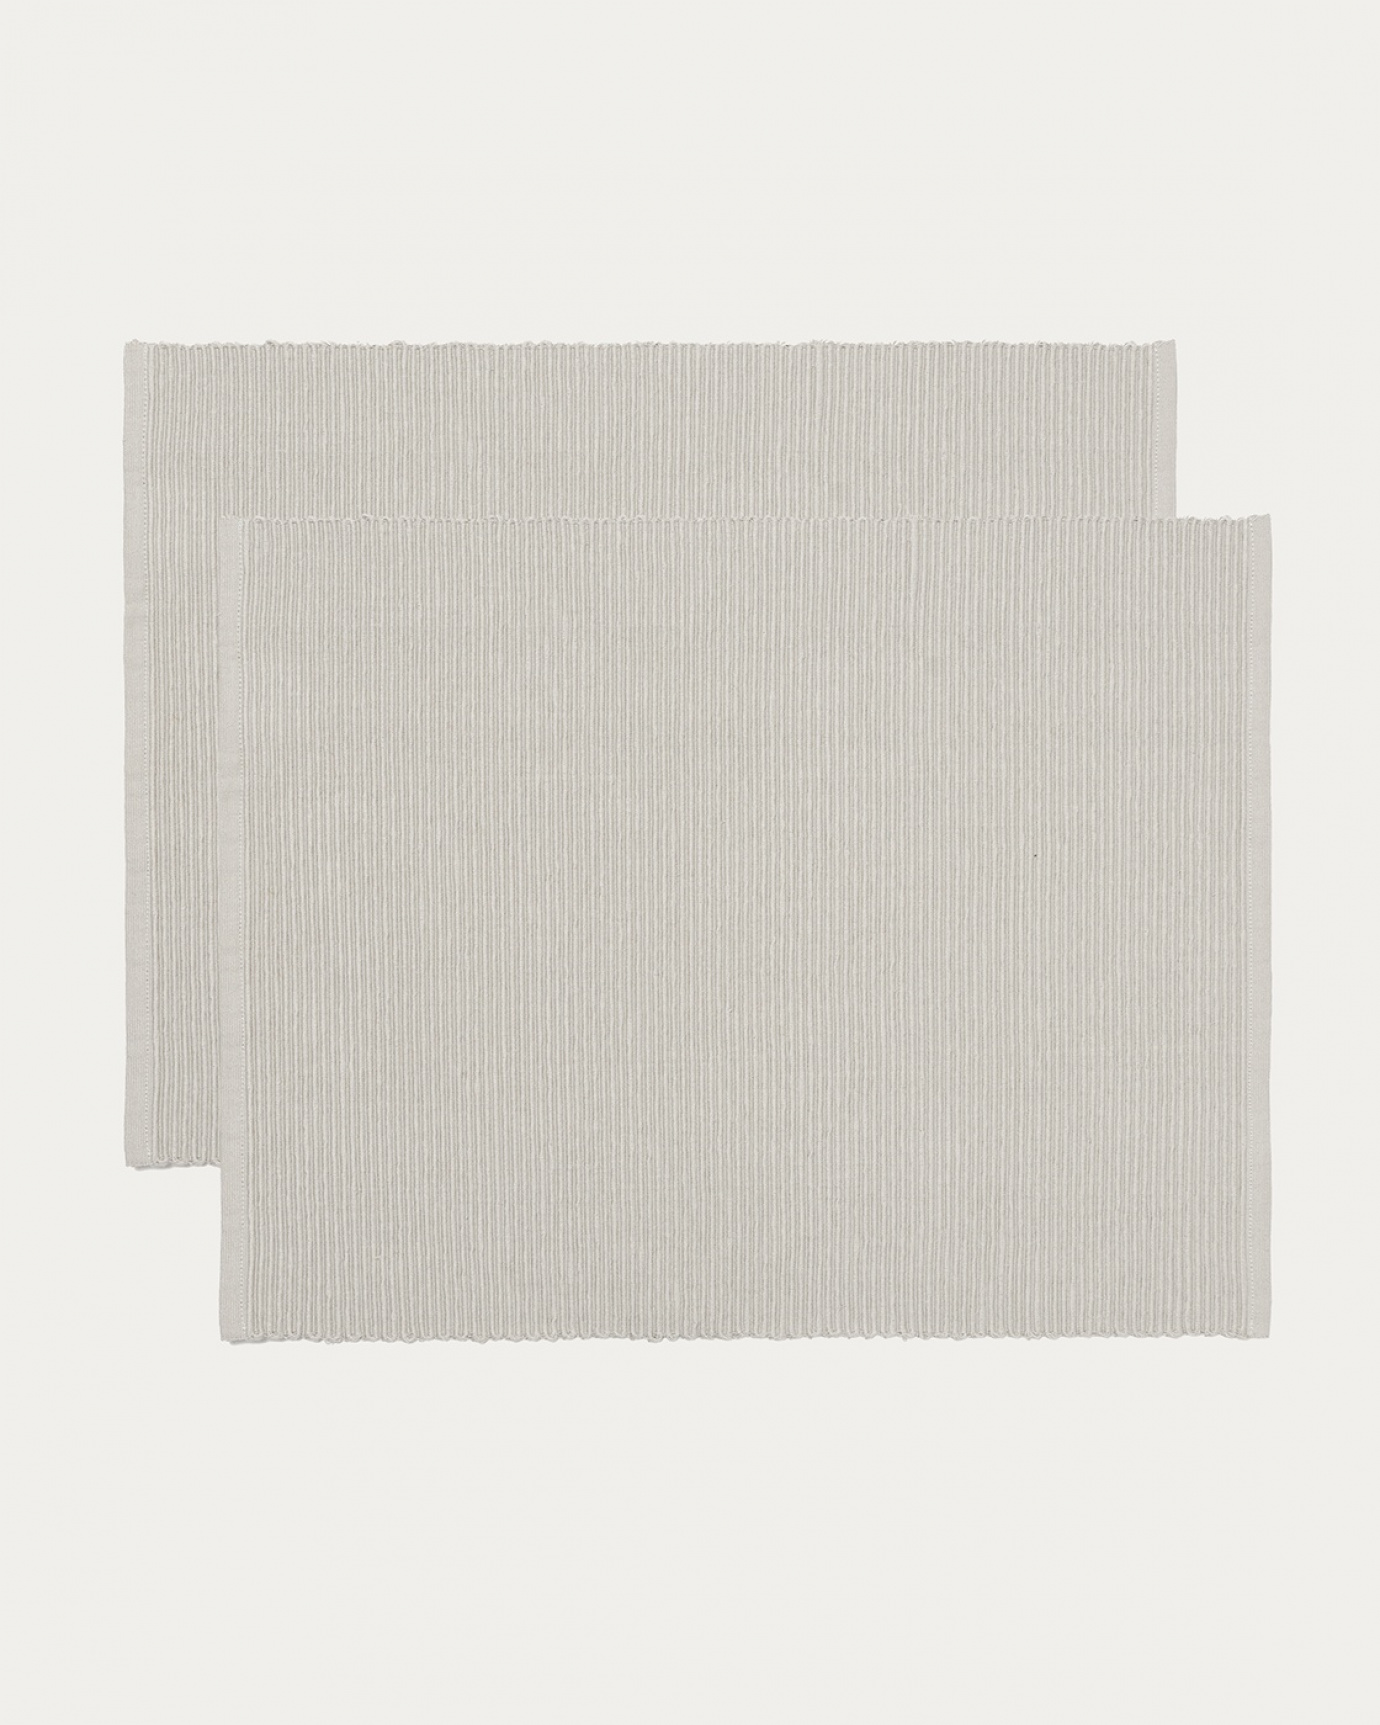 Produktbild hellgrau UNI Tischset aus weicher Baumwolle in Rippenqualität von LINUM DESIGN. Größe 35x46 cm und in 2er-Pack verkauft.